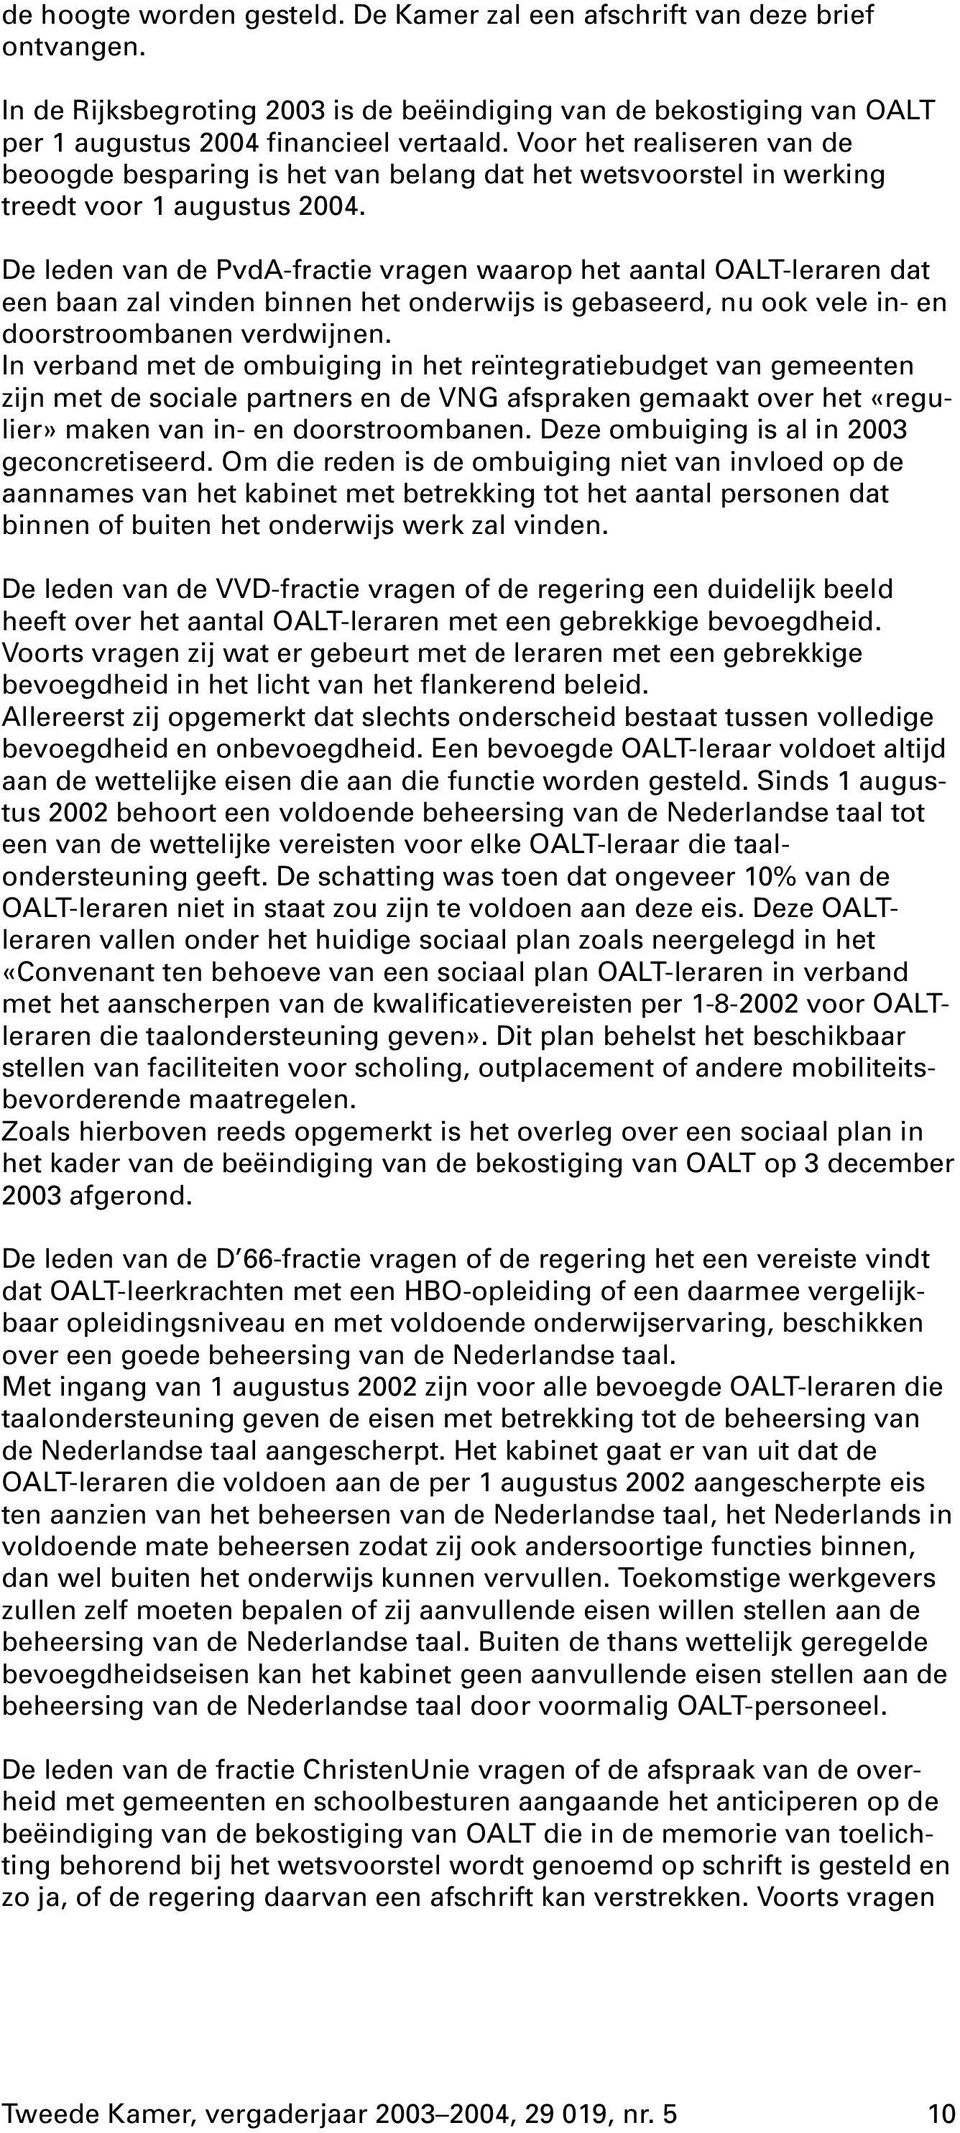 De leden van de PvdA-fractie vragen waarop het aantal OALT-leraren dat een baan zal vinden binnen het onderwijs is gebaseerd, nu ook vele in- en doorstroombanen verdwijnen.